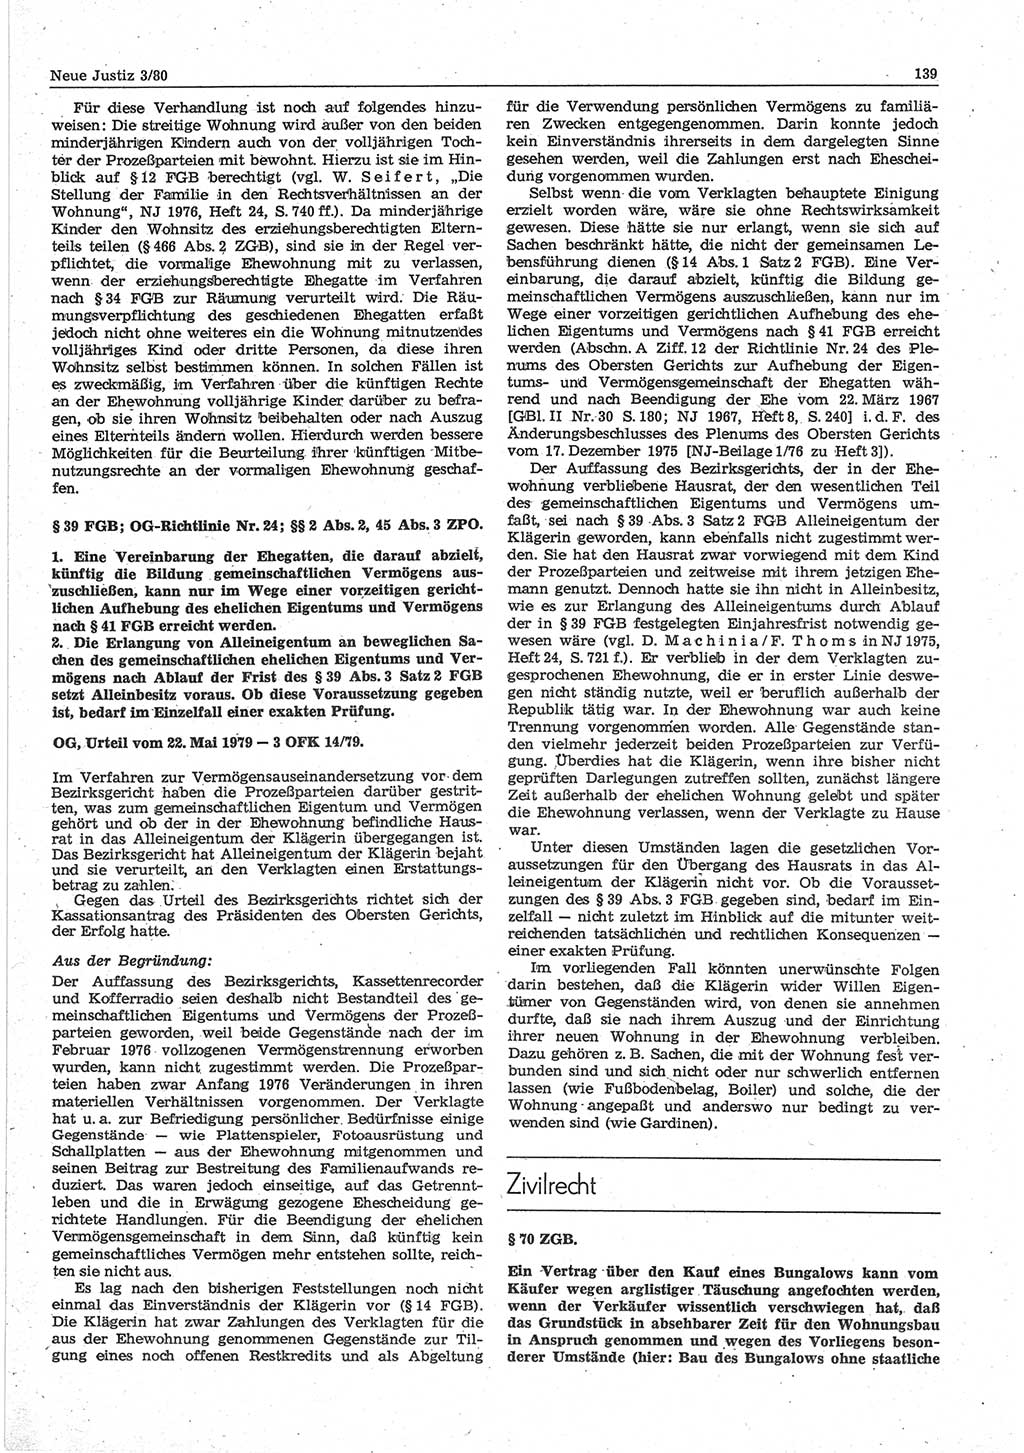 Neue Justiz (NJ), Zeitschrift für sozialistisches Recht und Gesetzlichkeit [Deutsche Demokratische Republik (DDR)], 34. Jahrgang 1980, Seite 139 (NJ DDR 1980, S. 139)